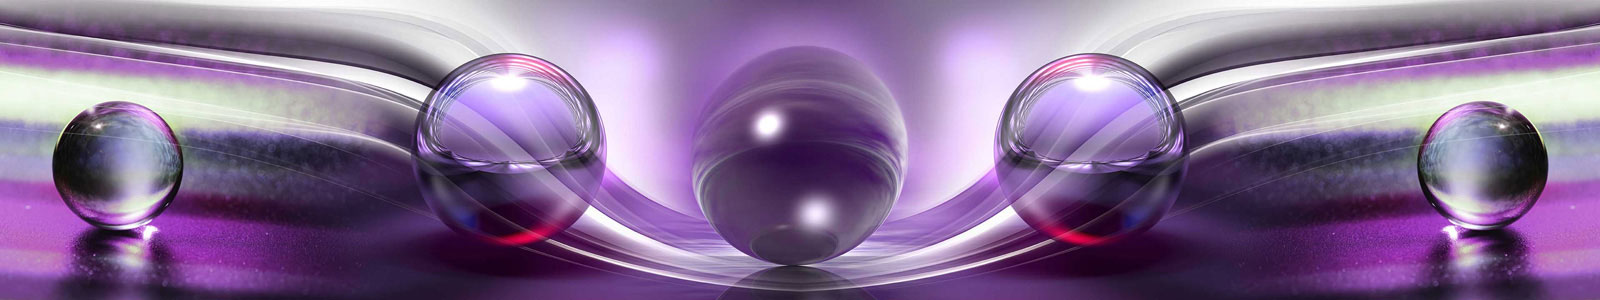 №5920 - Пурпурно-фиолетовые волны и стеклянные шары